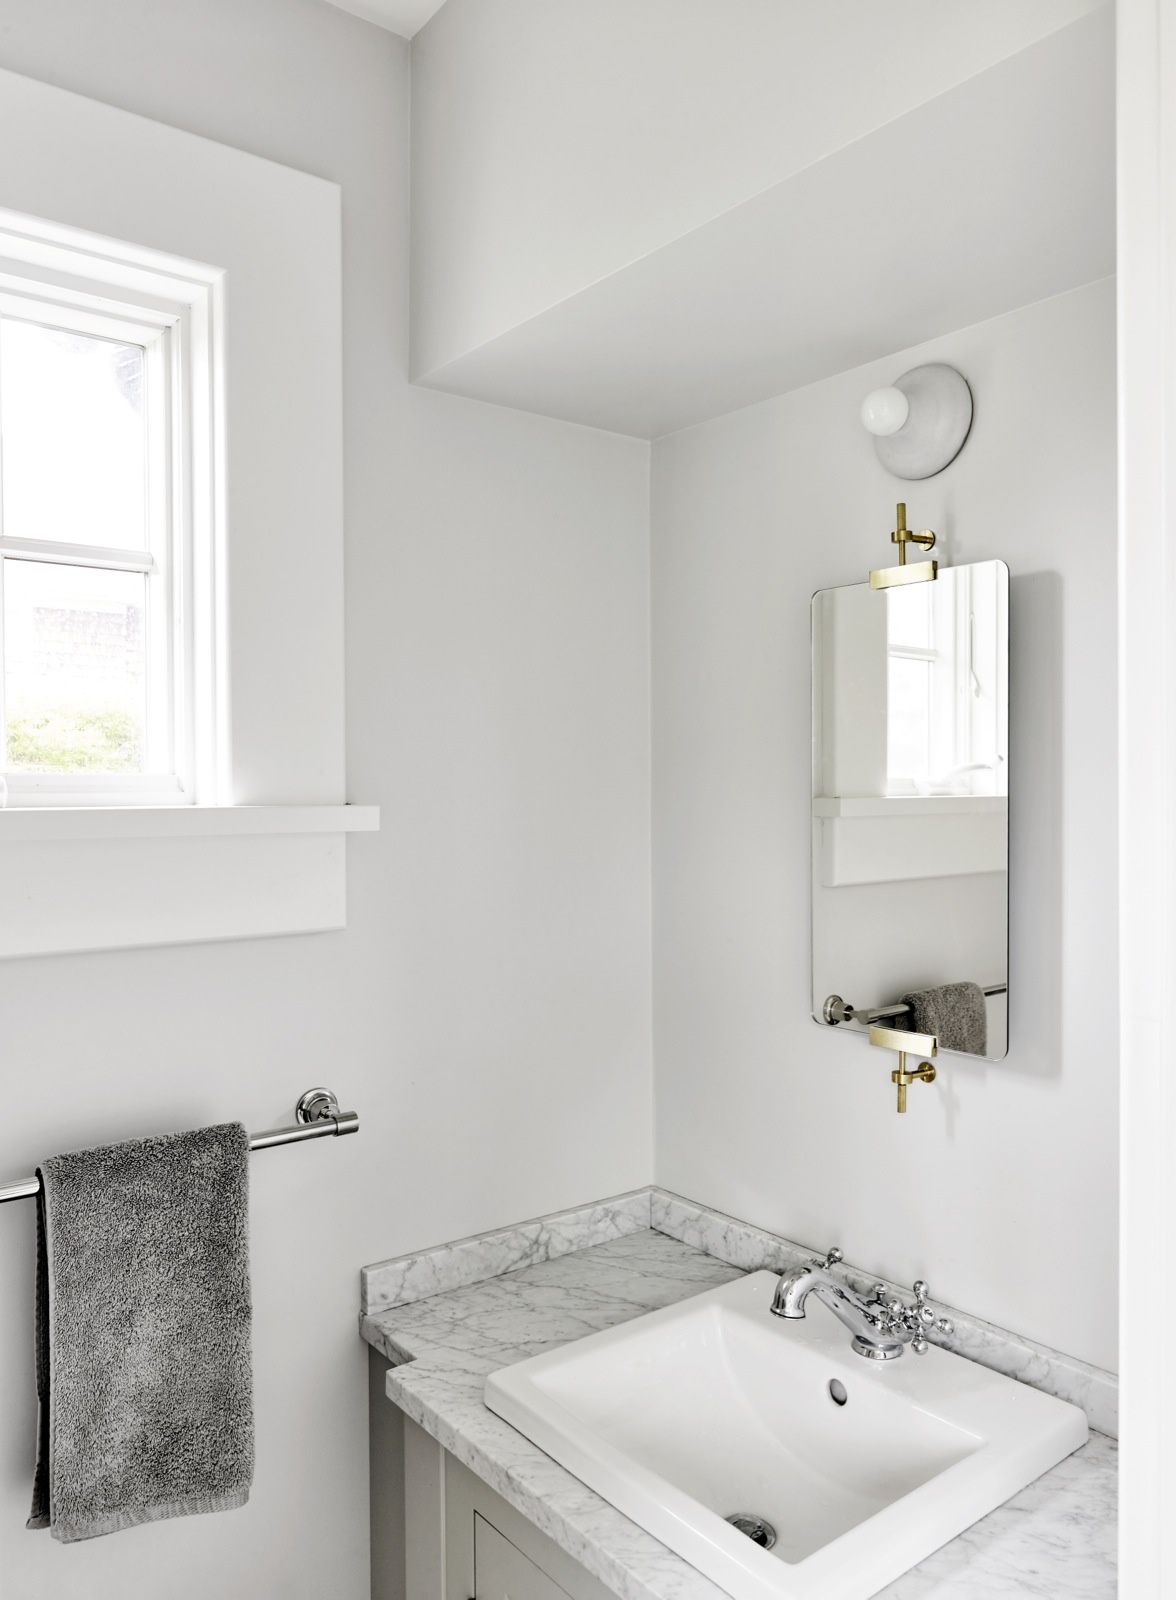 Phòng tắm cũng được sơn màu trắng tươi sáng, tuy nhiên có thêm sự góp mặt của màu xám nhạt trên mặt bàn bằng đá cẩm thạch ở khu vực bồn rửa tay. 